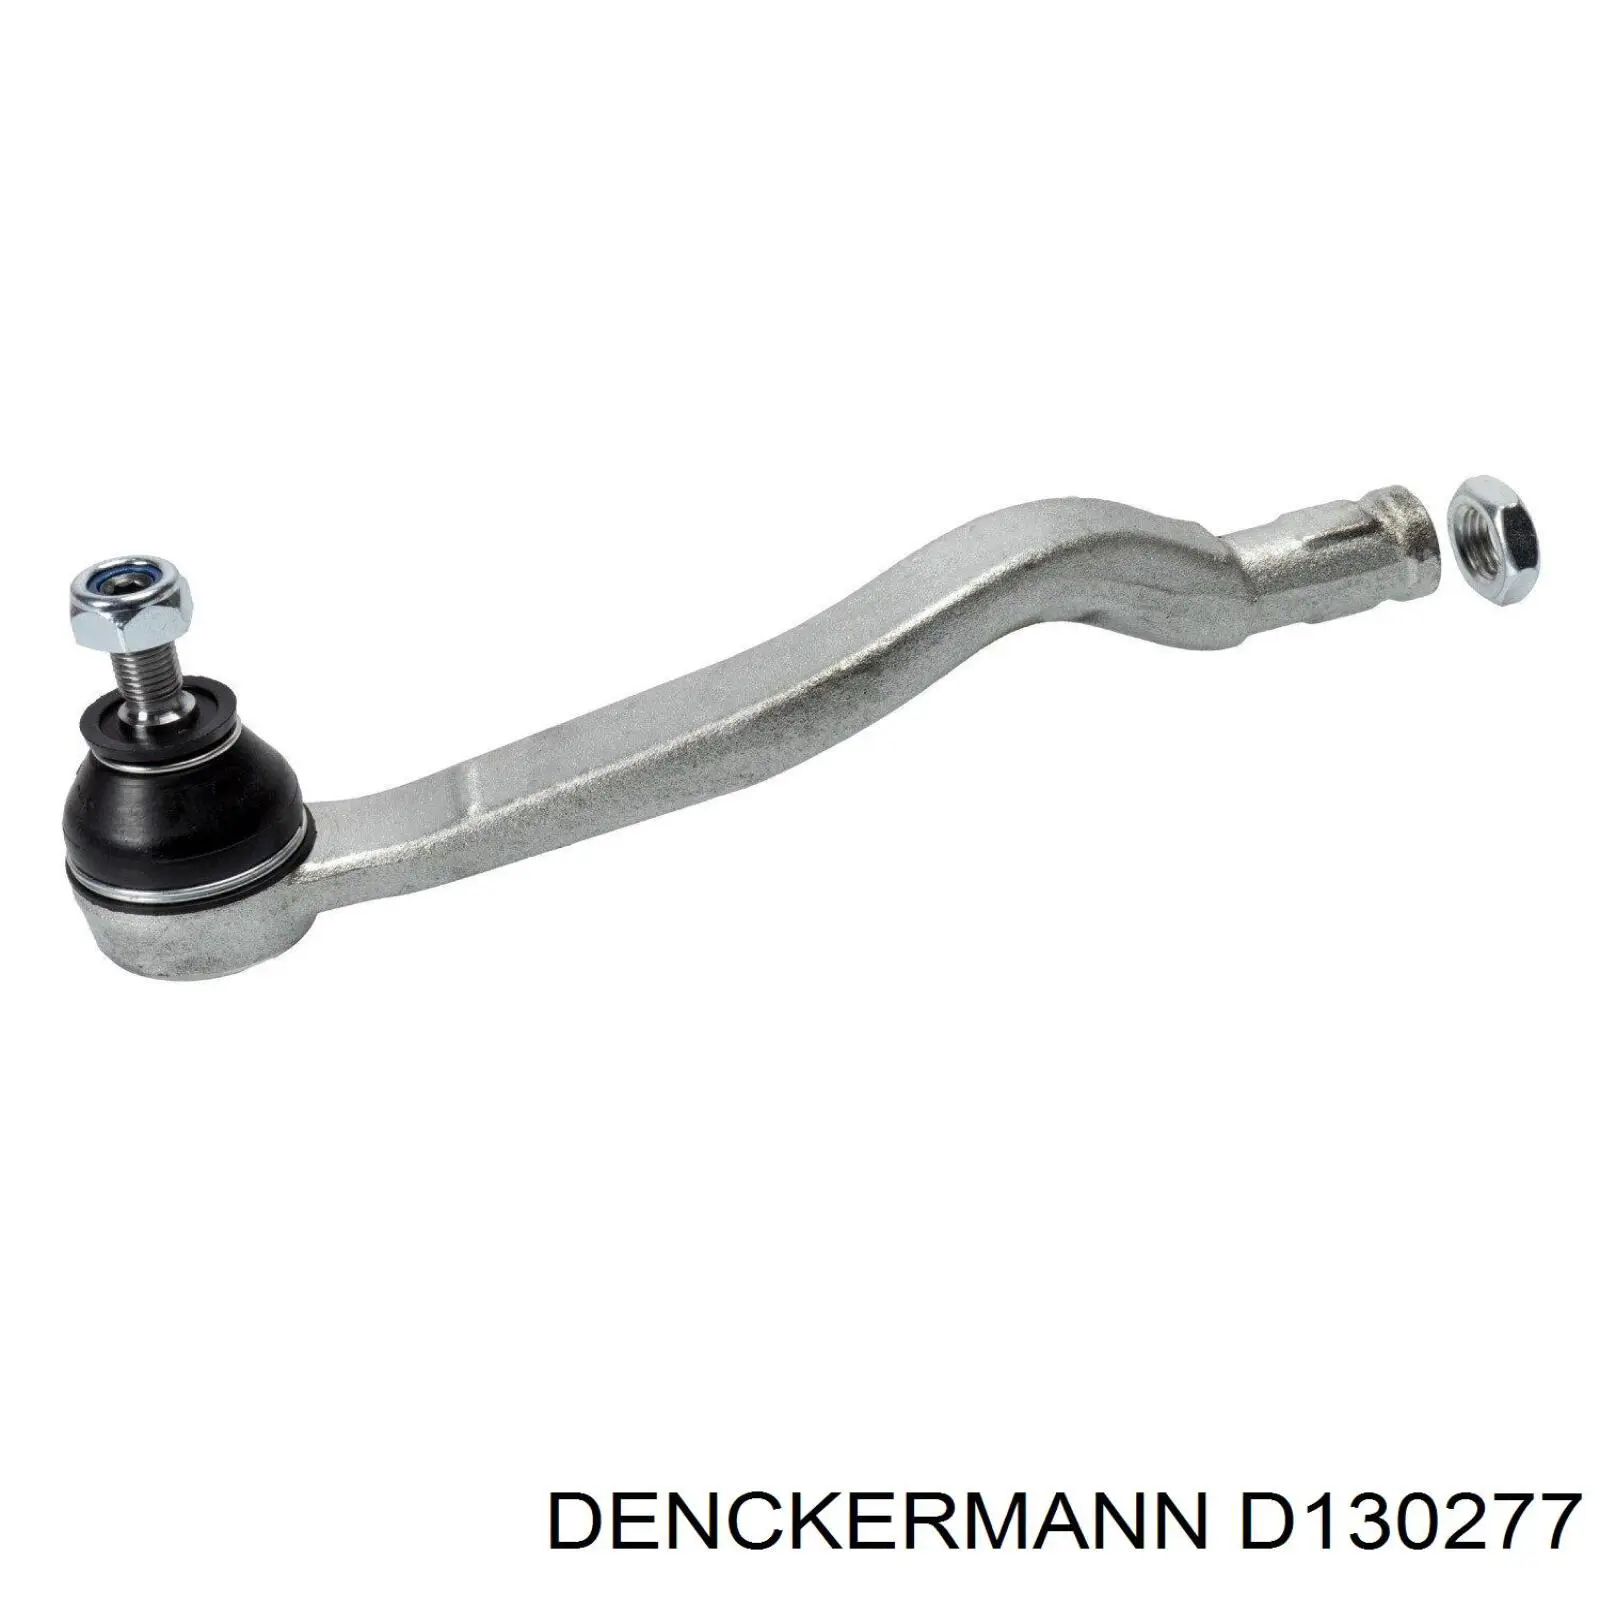 D130277 Denckermann rótula barra de acoplamiento exterior